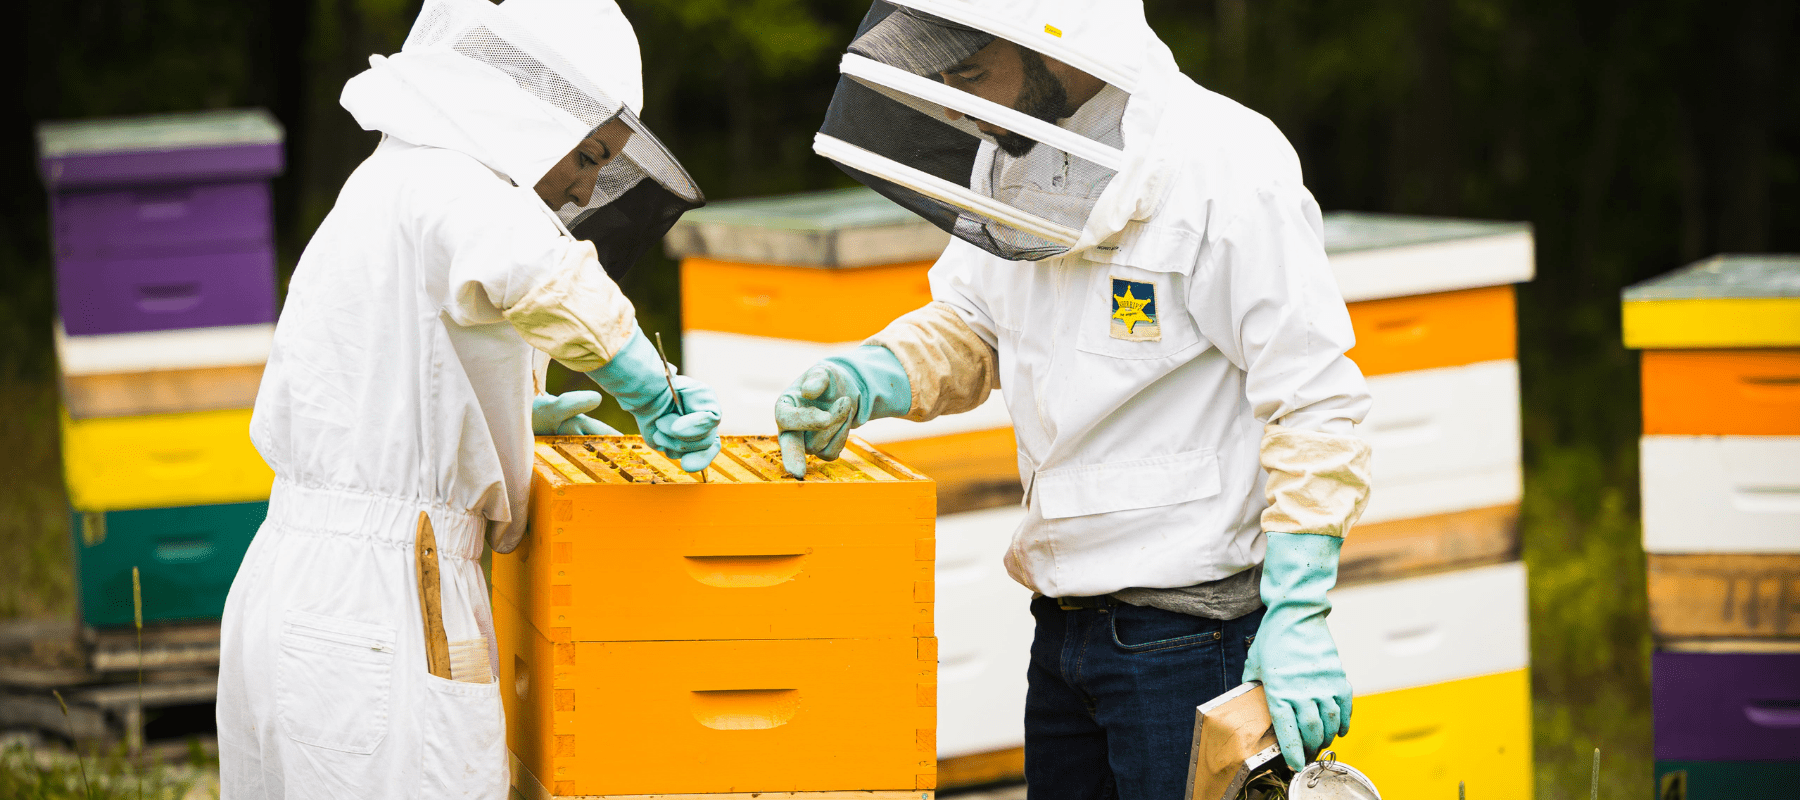 photo-exterieur-marie-michele-etienne-habit-apicole-souriante-cadre-miel-ruchers-colores